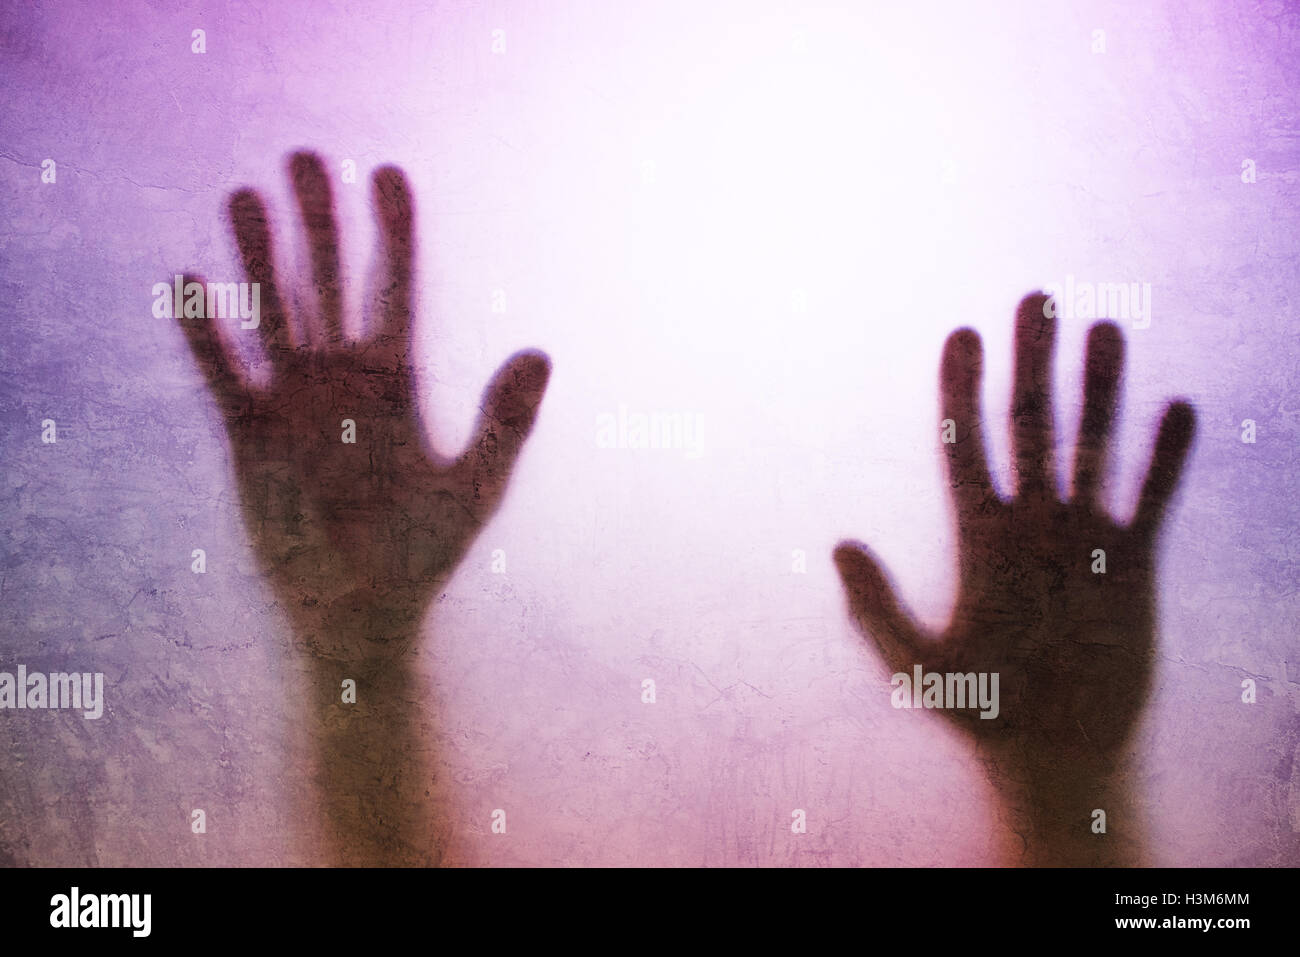 Personne pris au piège lumineux concept avec silhouette de mains derrière le verre mat, utile comme image d'illustration pour la traite des personnes, Banque D'Images